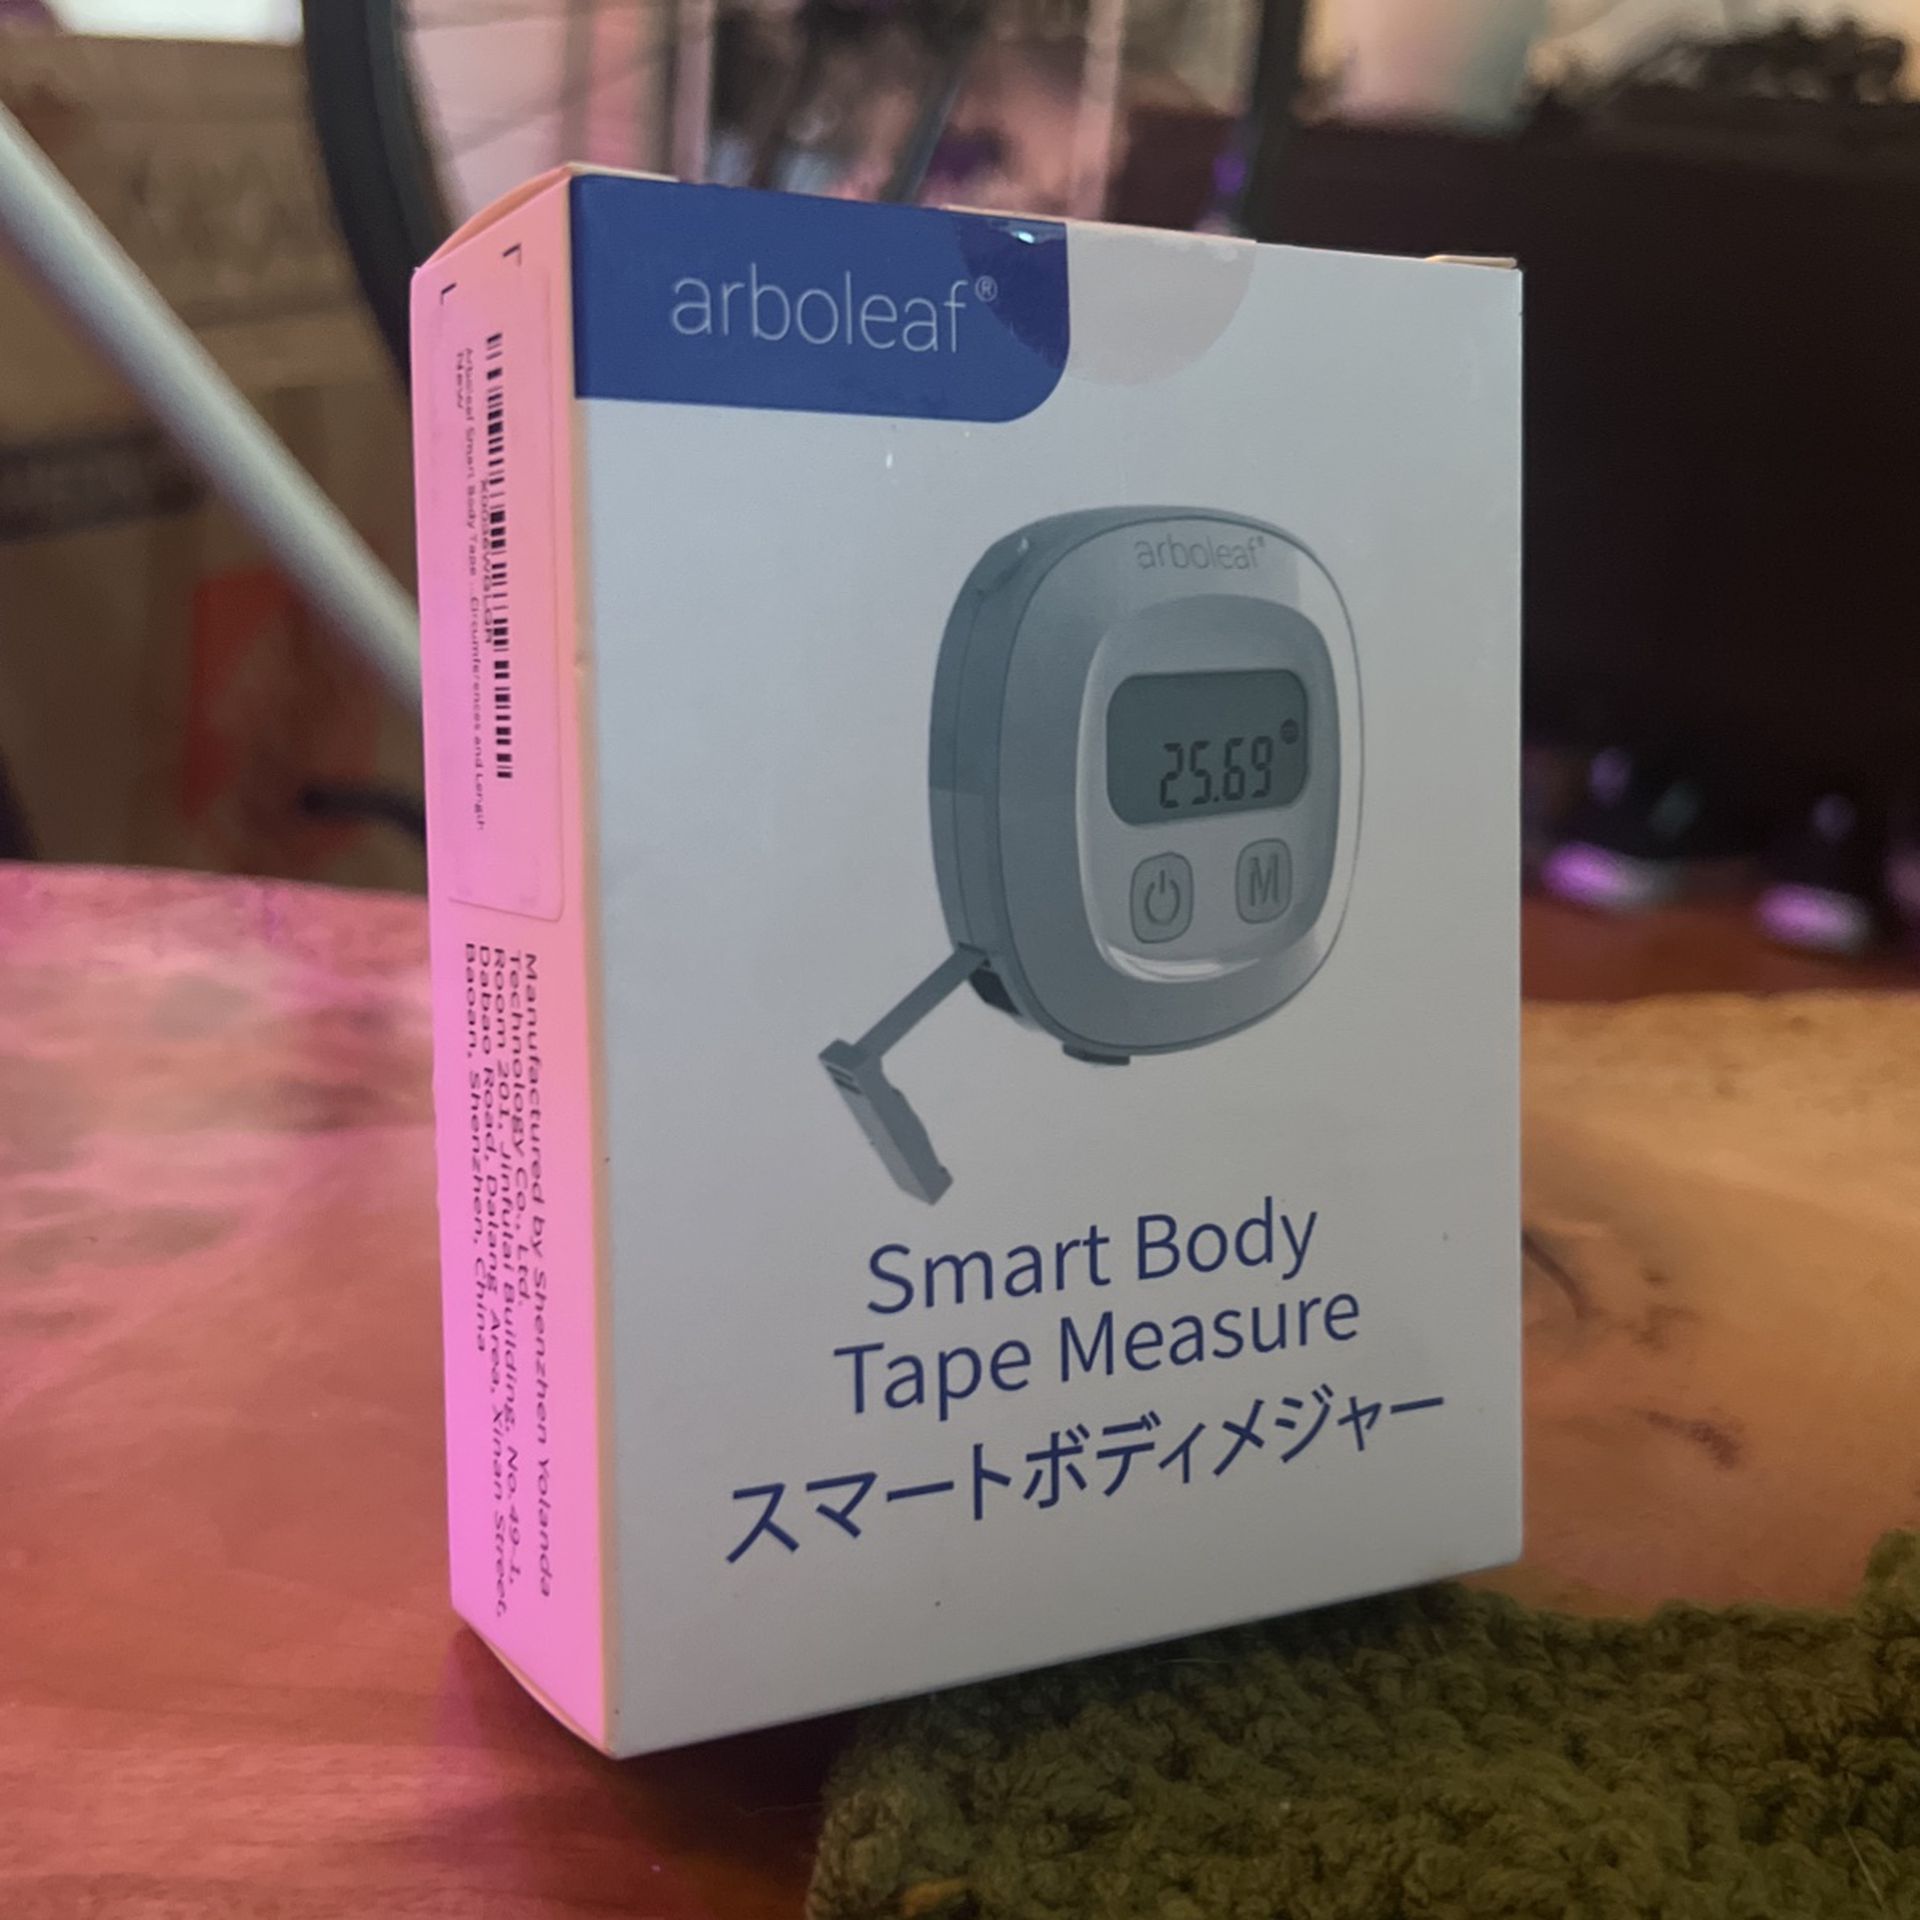 ArboLeaf Smart Body Tape Measure for Sale in Seattle, WA - OfferUp